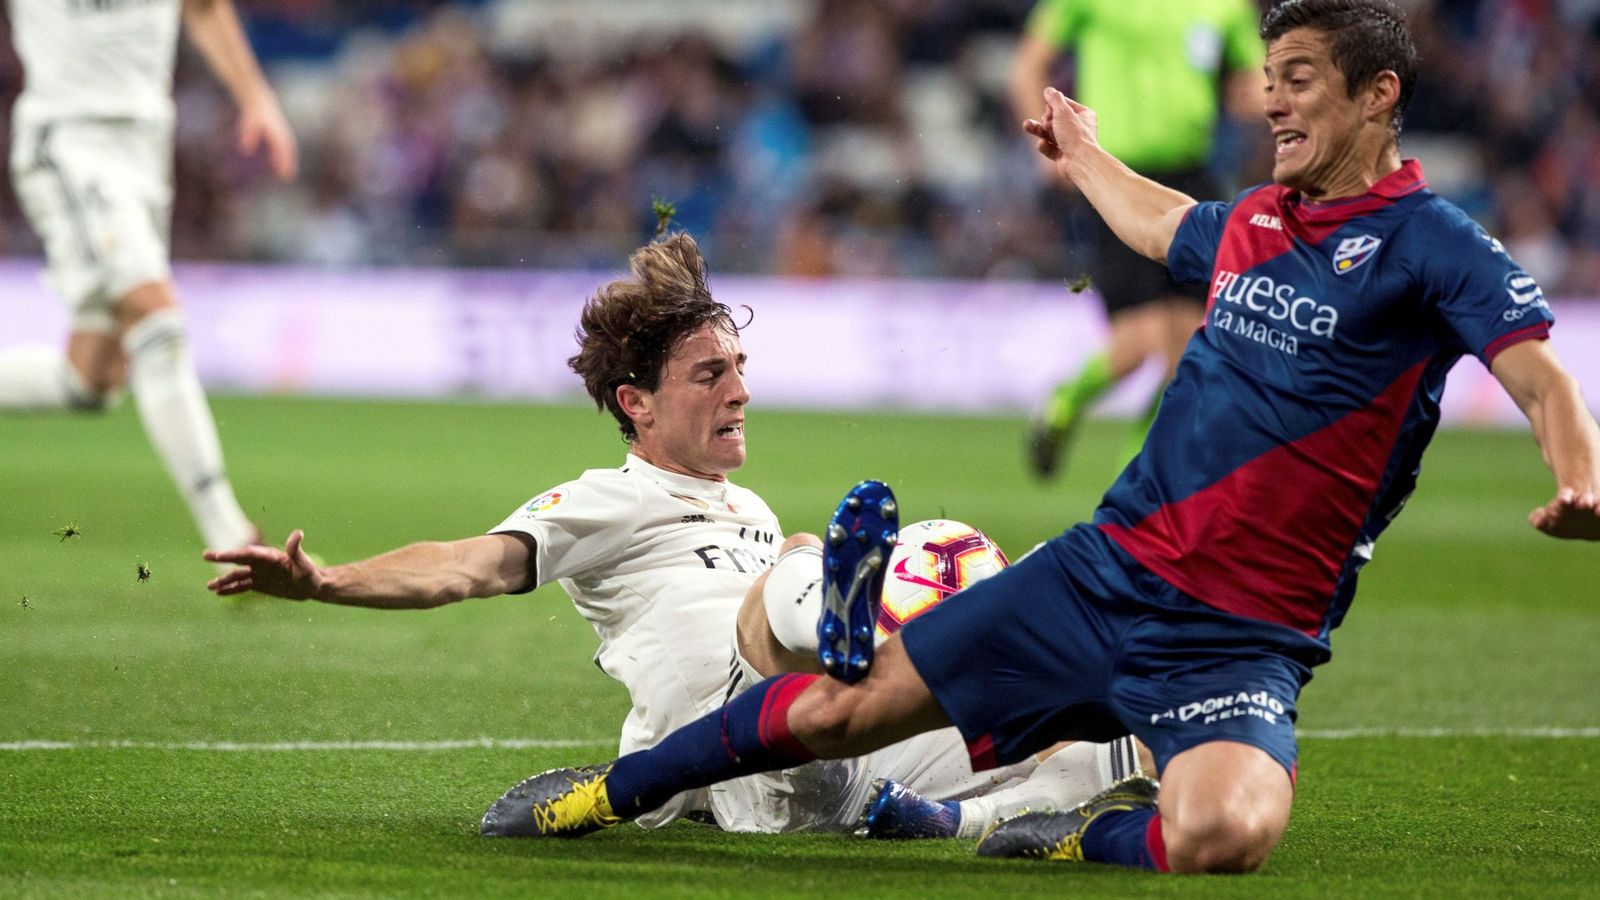 Real Madrid - Huesca en directo: resumen, goles y resultado